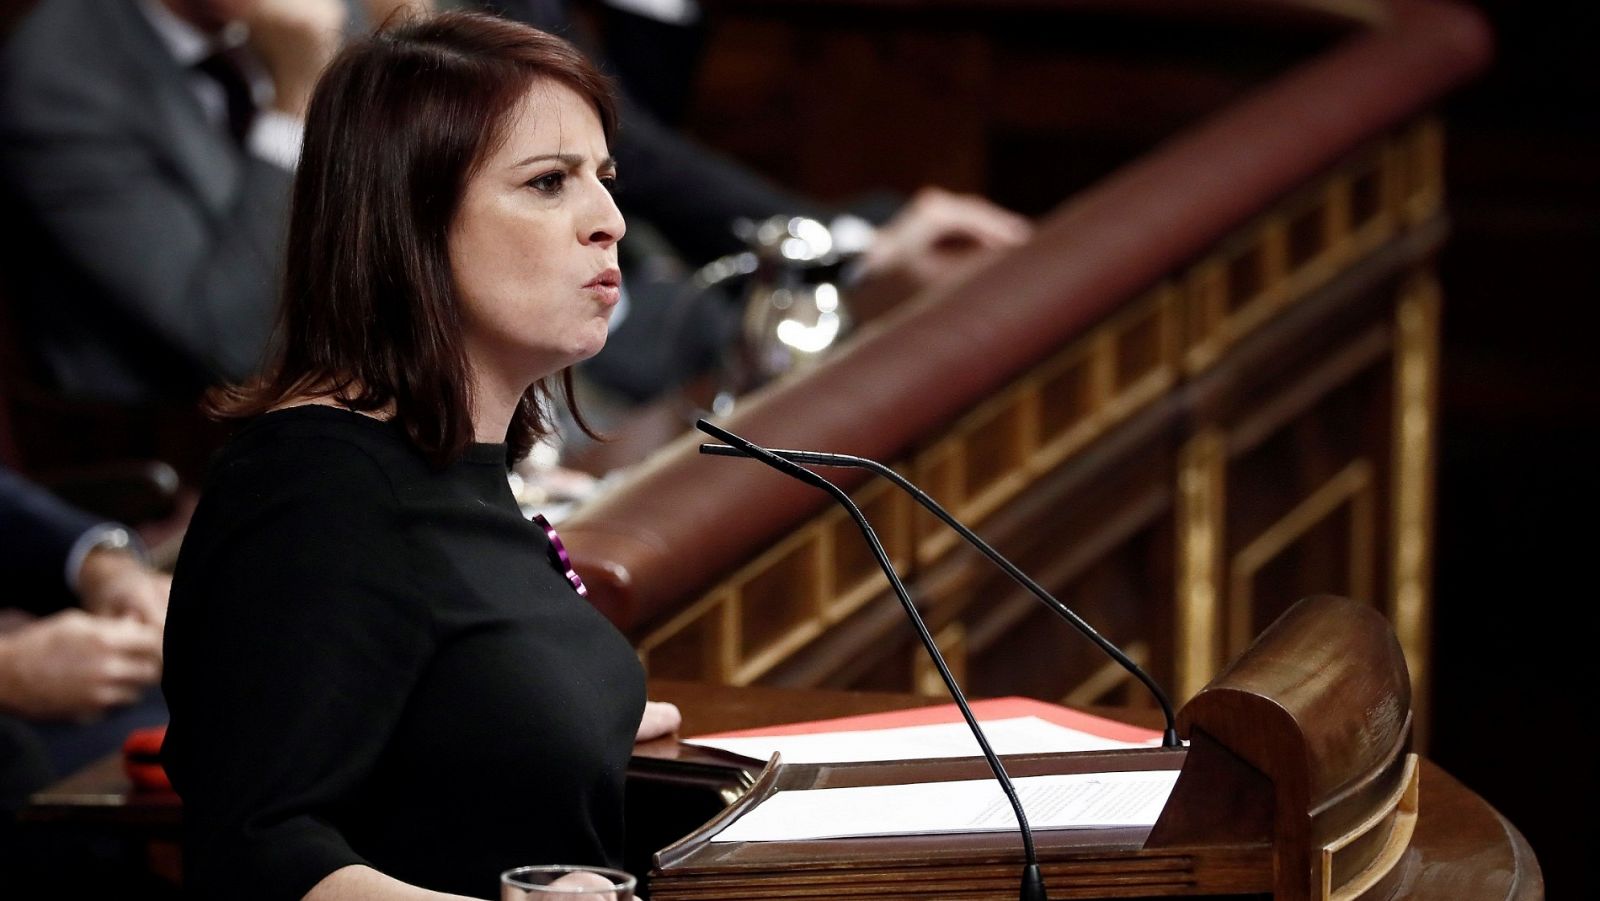 Investidura: Adriana Lastra (PSOE): "Levantaremos una legislatura del diálogo, la confianza y el progreso"